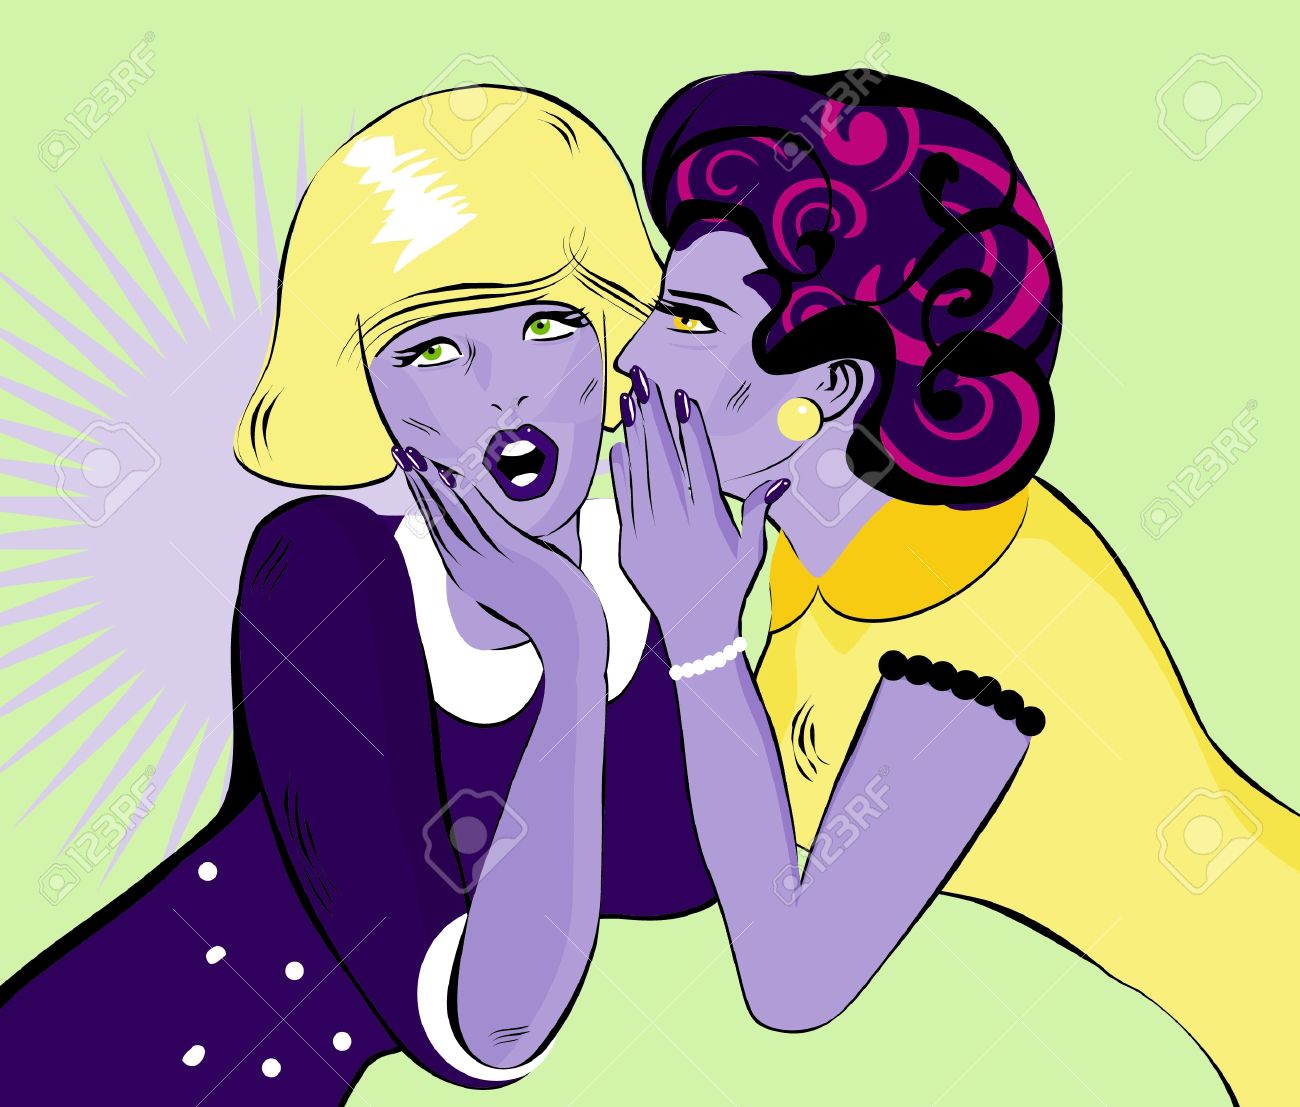 Le commérage et la médisance : Attention au venin dans nos paroles ! - Page 2 15770860-gossiping-women-comic-Love-Vector-illustration--Stock-Vector-gossip-secret-women